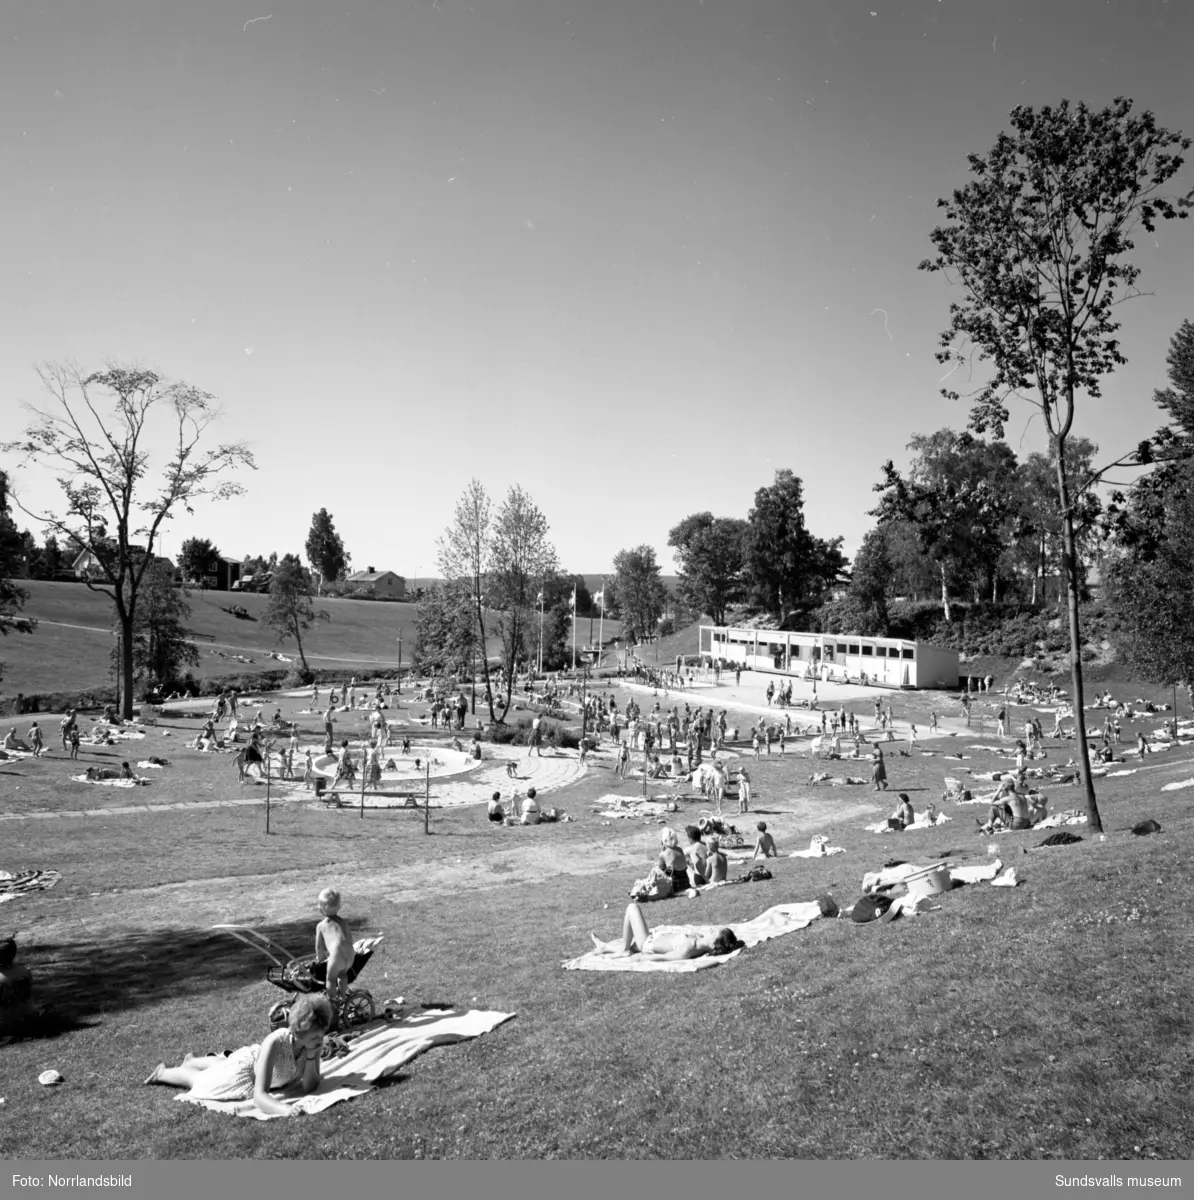 I nuvarande Fagerdalsparken fanns fram till början av 2000-talet ett friluftsbad, på relativt bekvämt promenadavstånd för semesterfirande Sundsvallsbor. Badet låg på platsen där grosshandlare Nils Wikström, en av de första träpatronerna, hade sitt sommarställe Villa Fagerdal  som byggdes 1865 vid Sidsjöbäcken. Villan stod kvar fram till 1950-talet och 1959 anlade Sundsvalls stad Fagerdalsbadet,  parken rustades upp och blev ett populärt tillhåll sommartid, inte minst för barnen. Hösten 2002 revs badet och groparna fylldes igen, men parken finns kvar – en rest av Villa Fagerdals trädgård.